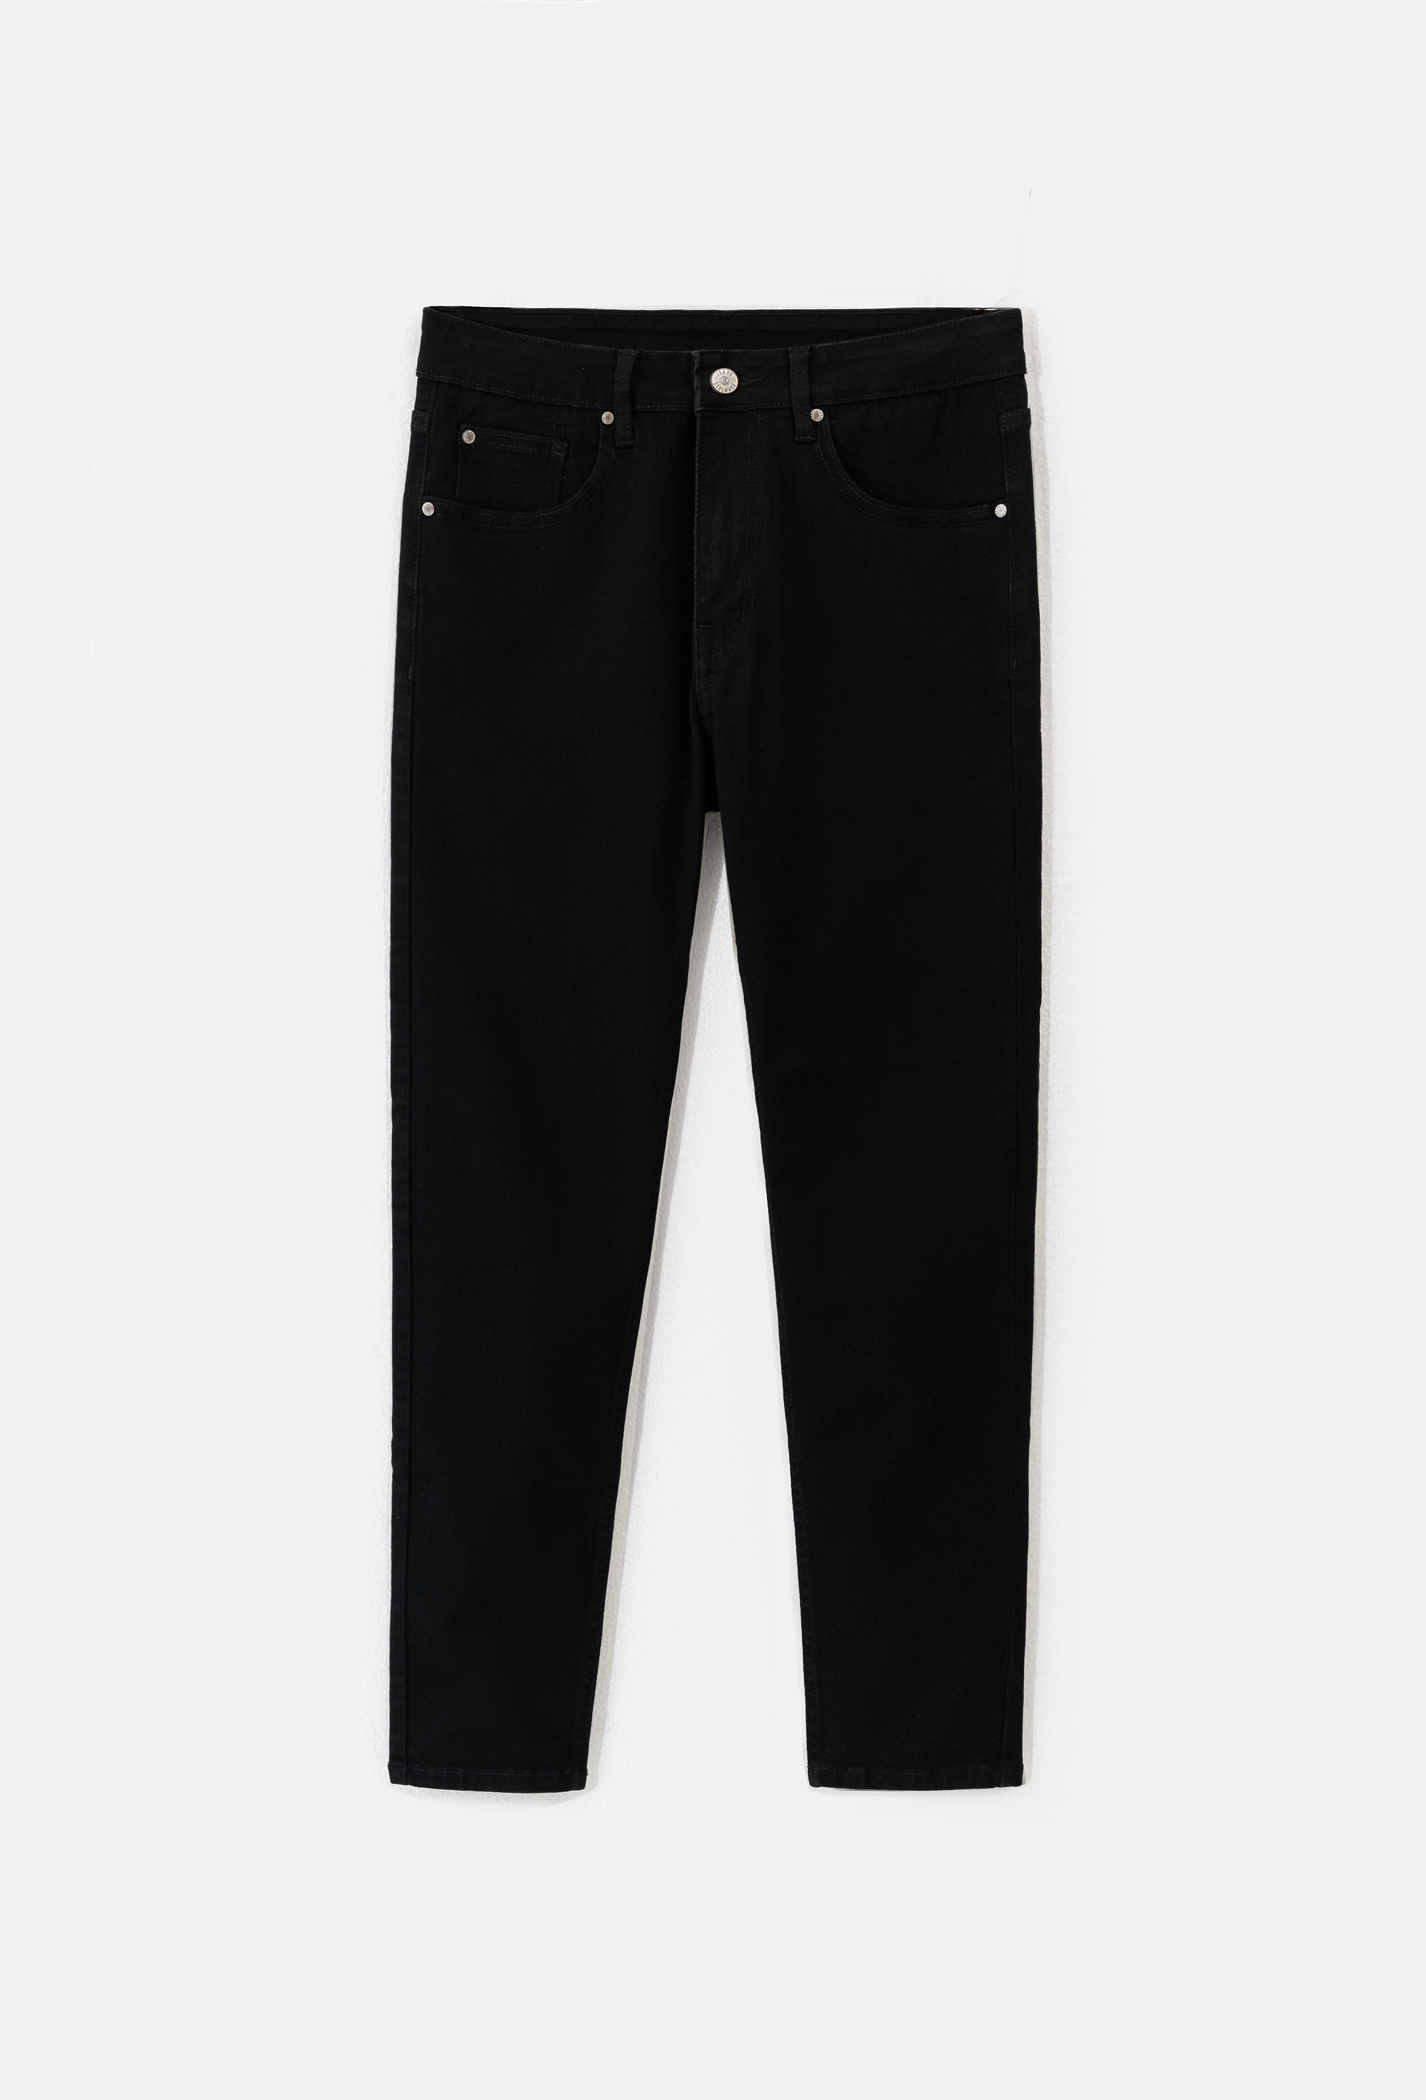 OUTLET - Quần Jeans Basic Slim V2 Đen 1